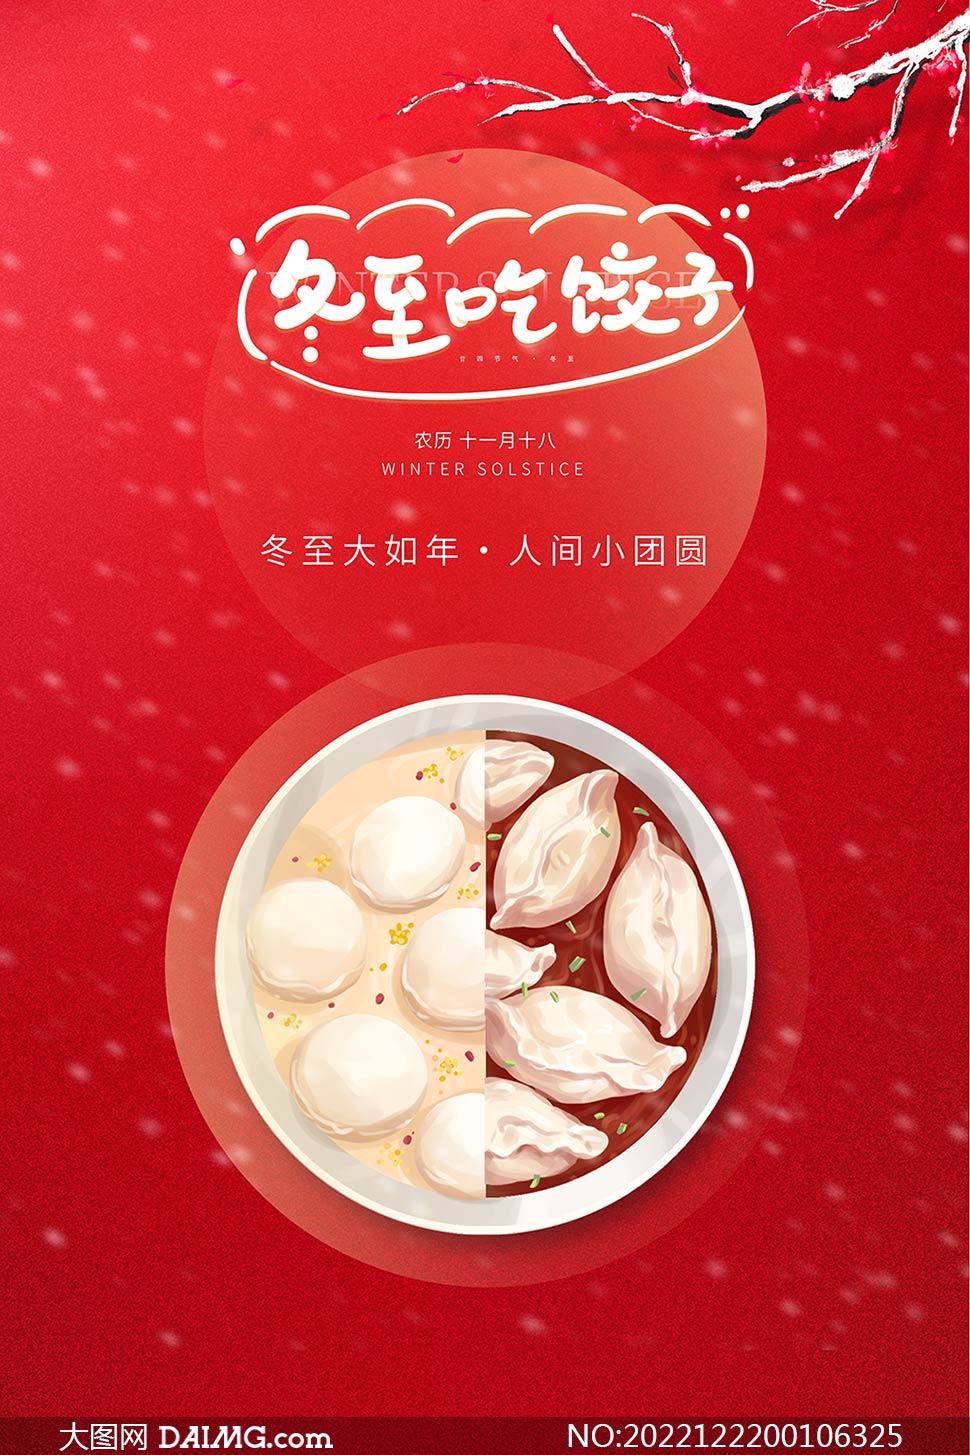 冬至吃饺子图片 唯美图片